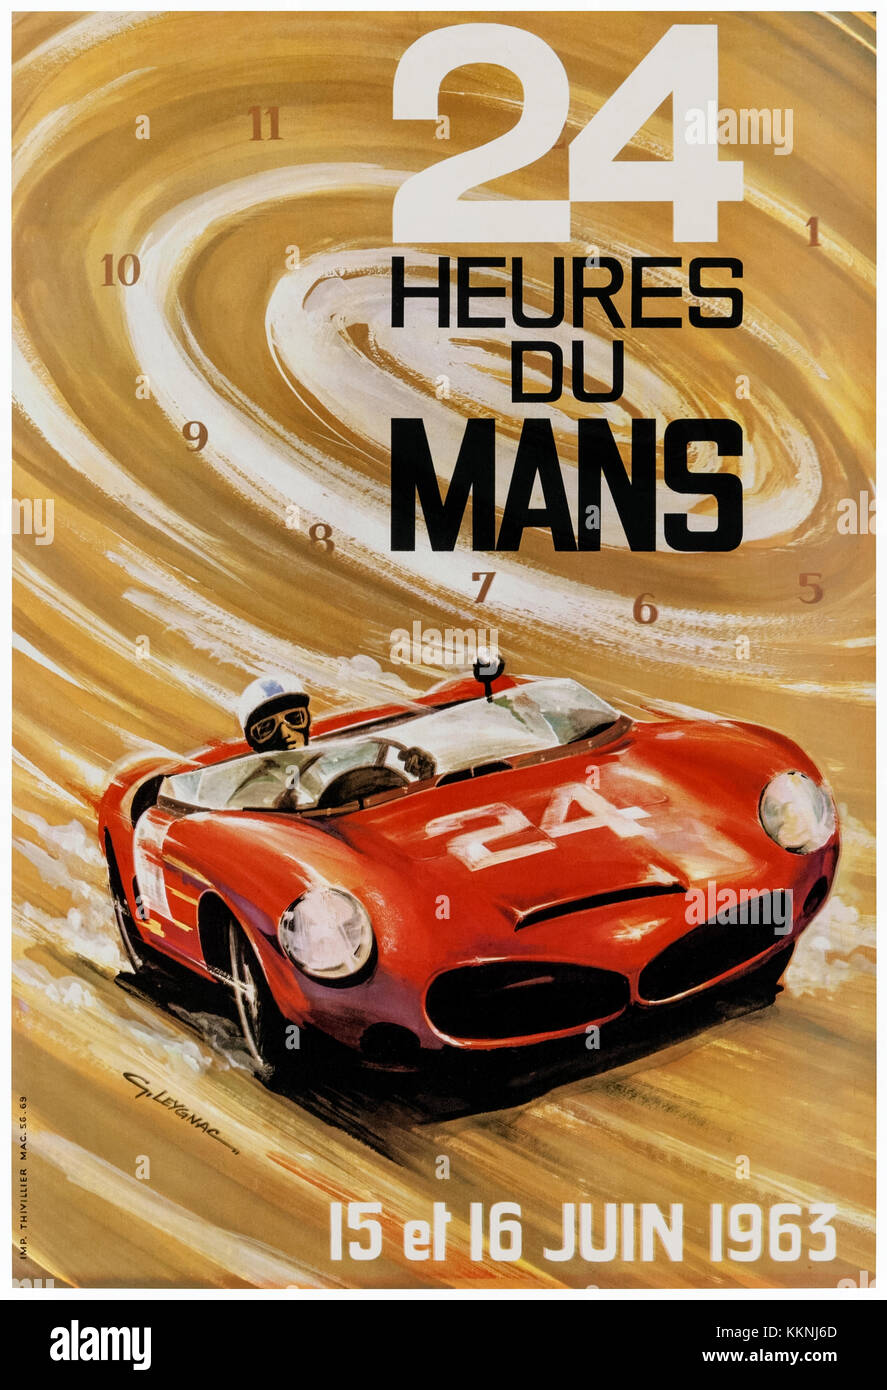 "24 Heures du Mans 15 et 16 Juin 1963" Plakat illustriert von G. Laygnac und zeigt ein Ferrari 330 TRI/LM Spyder Rennsportwagen, der Sieg von Olivier Gendebien und Phil Hill im Vorjahr gefahren wurde. Weitere Informationen finden Sie unten. Stockfoto